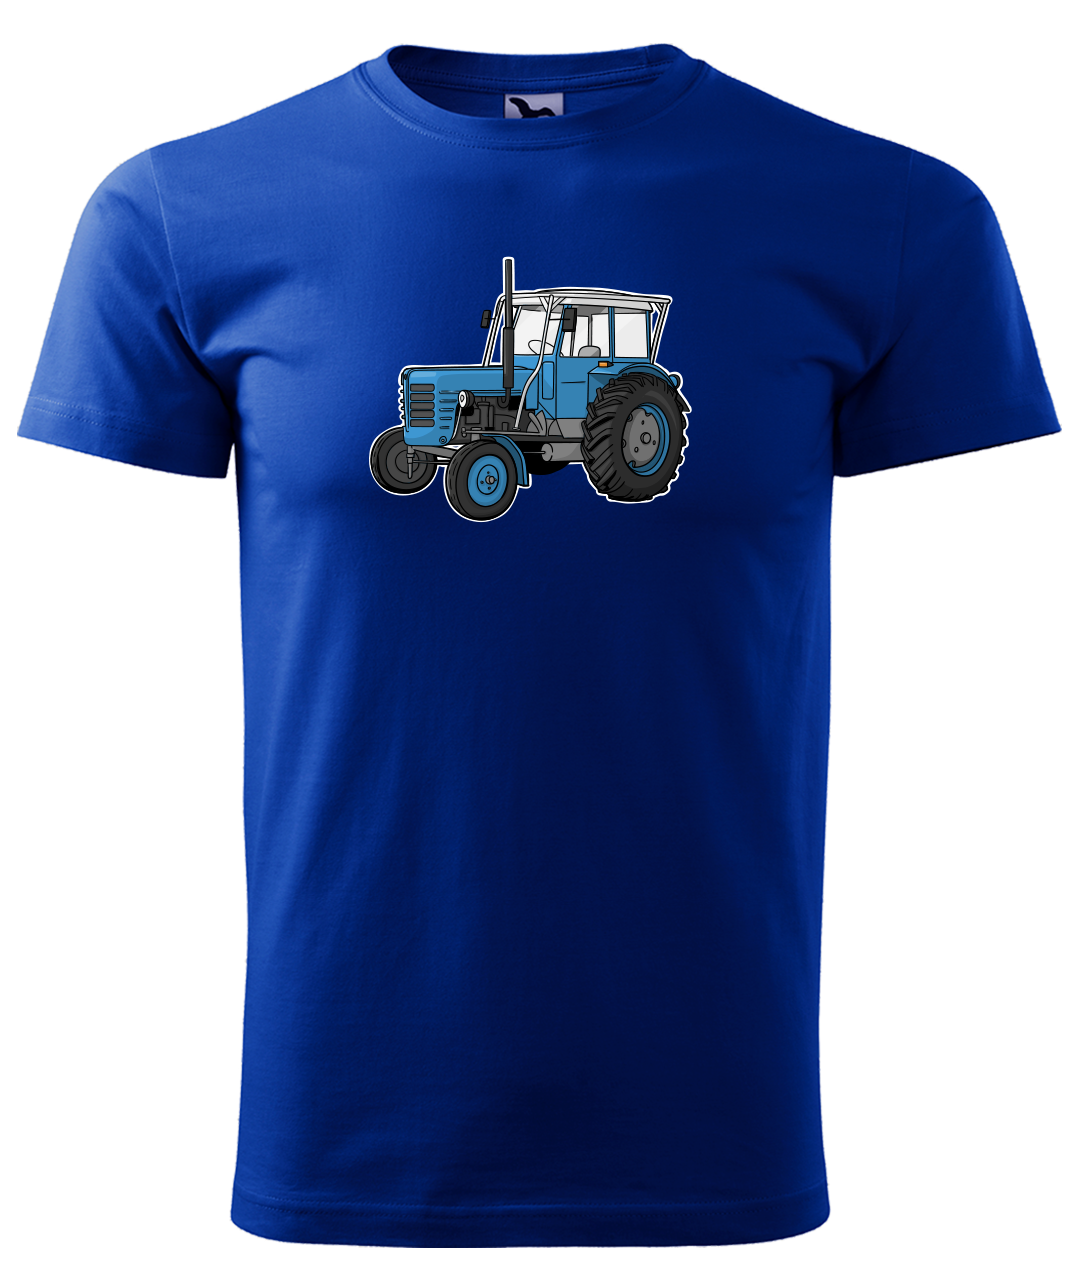 Dětské tričko s traktorem - Starý traktor Velikost: 4 roky / 110 cm, Barva: Královská modrá (05)